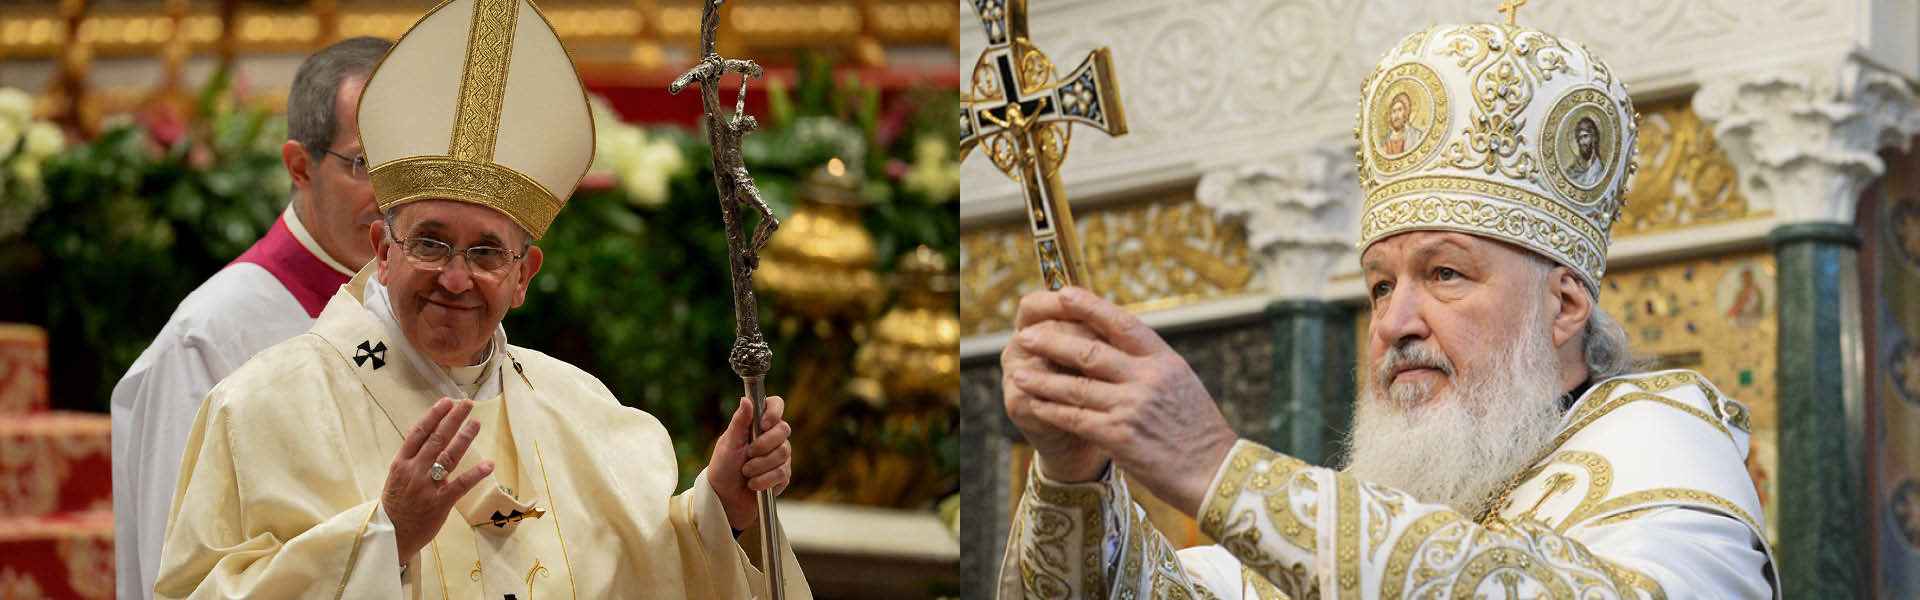 El papa Francisco y el patriara ortodoxo Kirill se encontrarán en Cuba